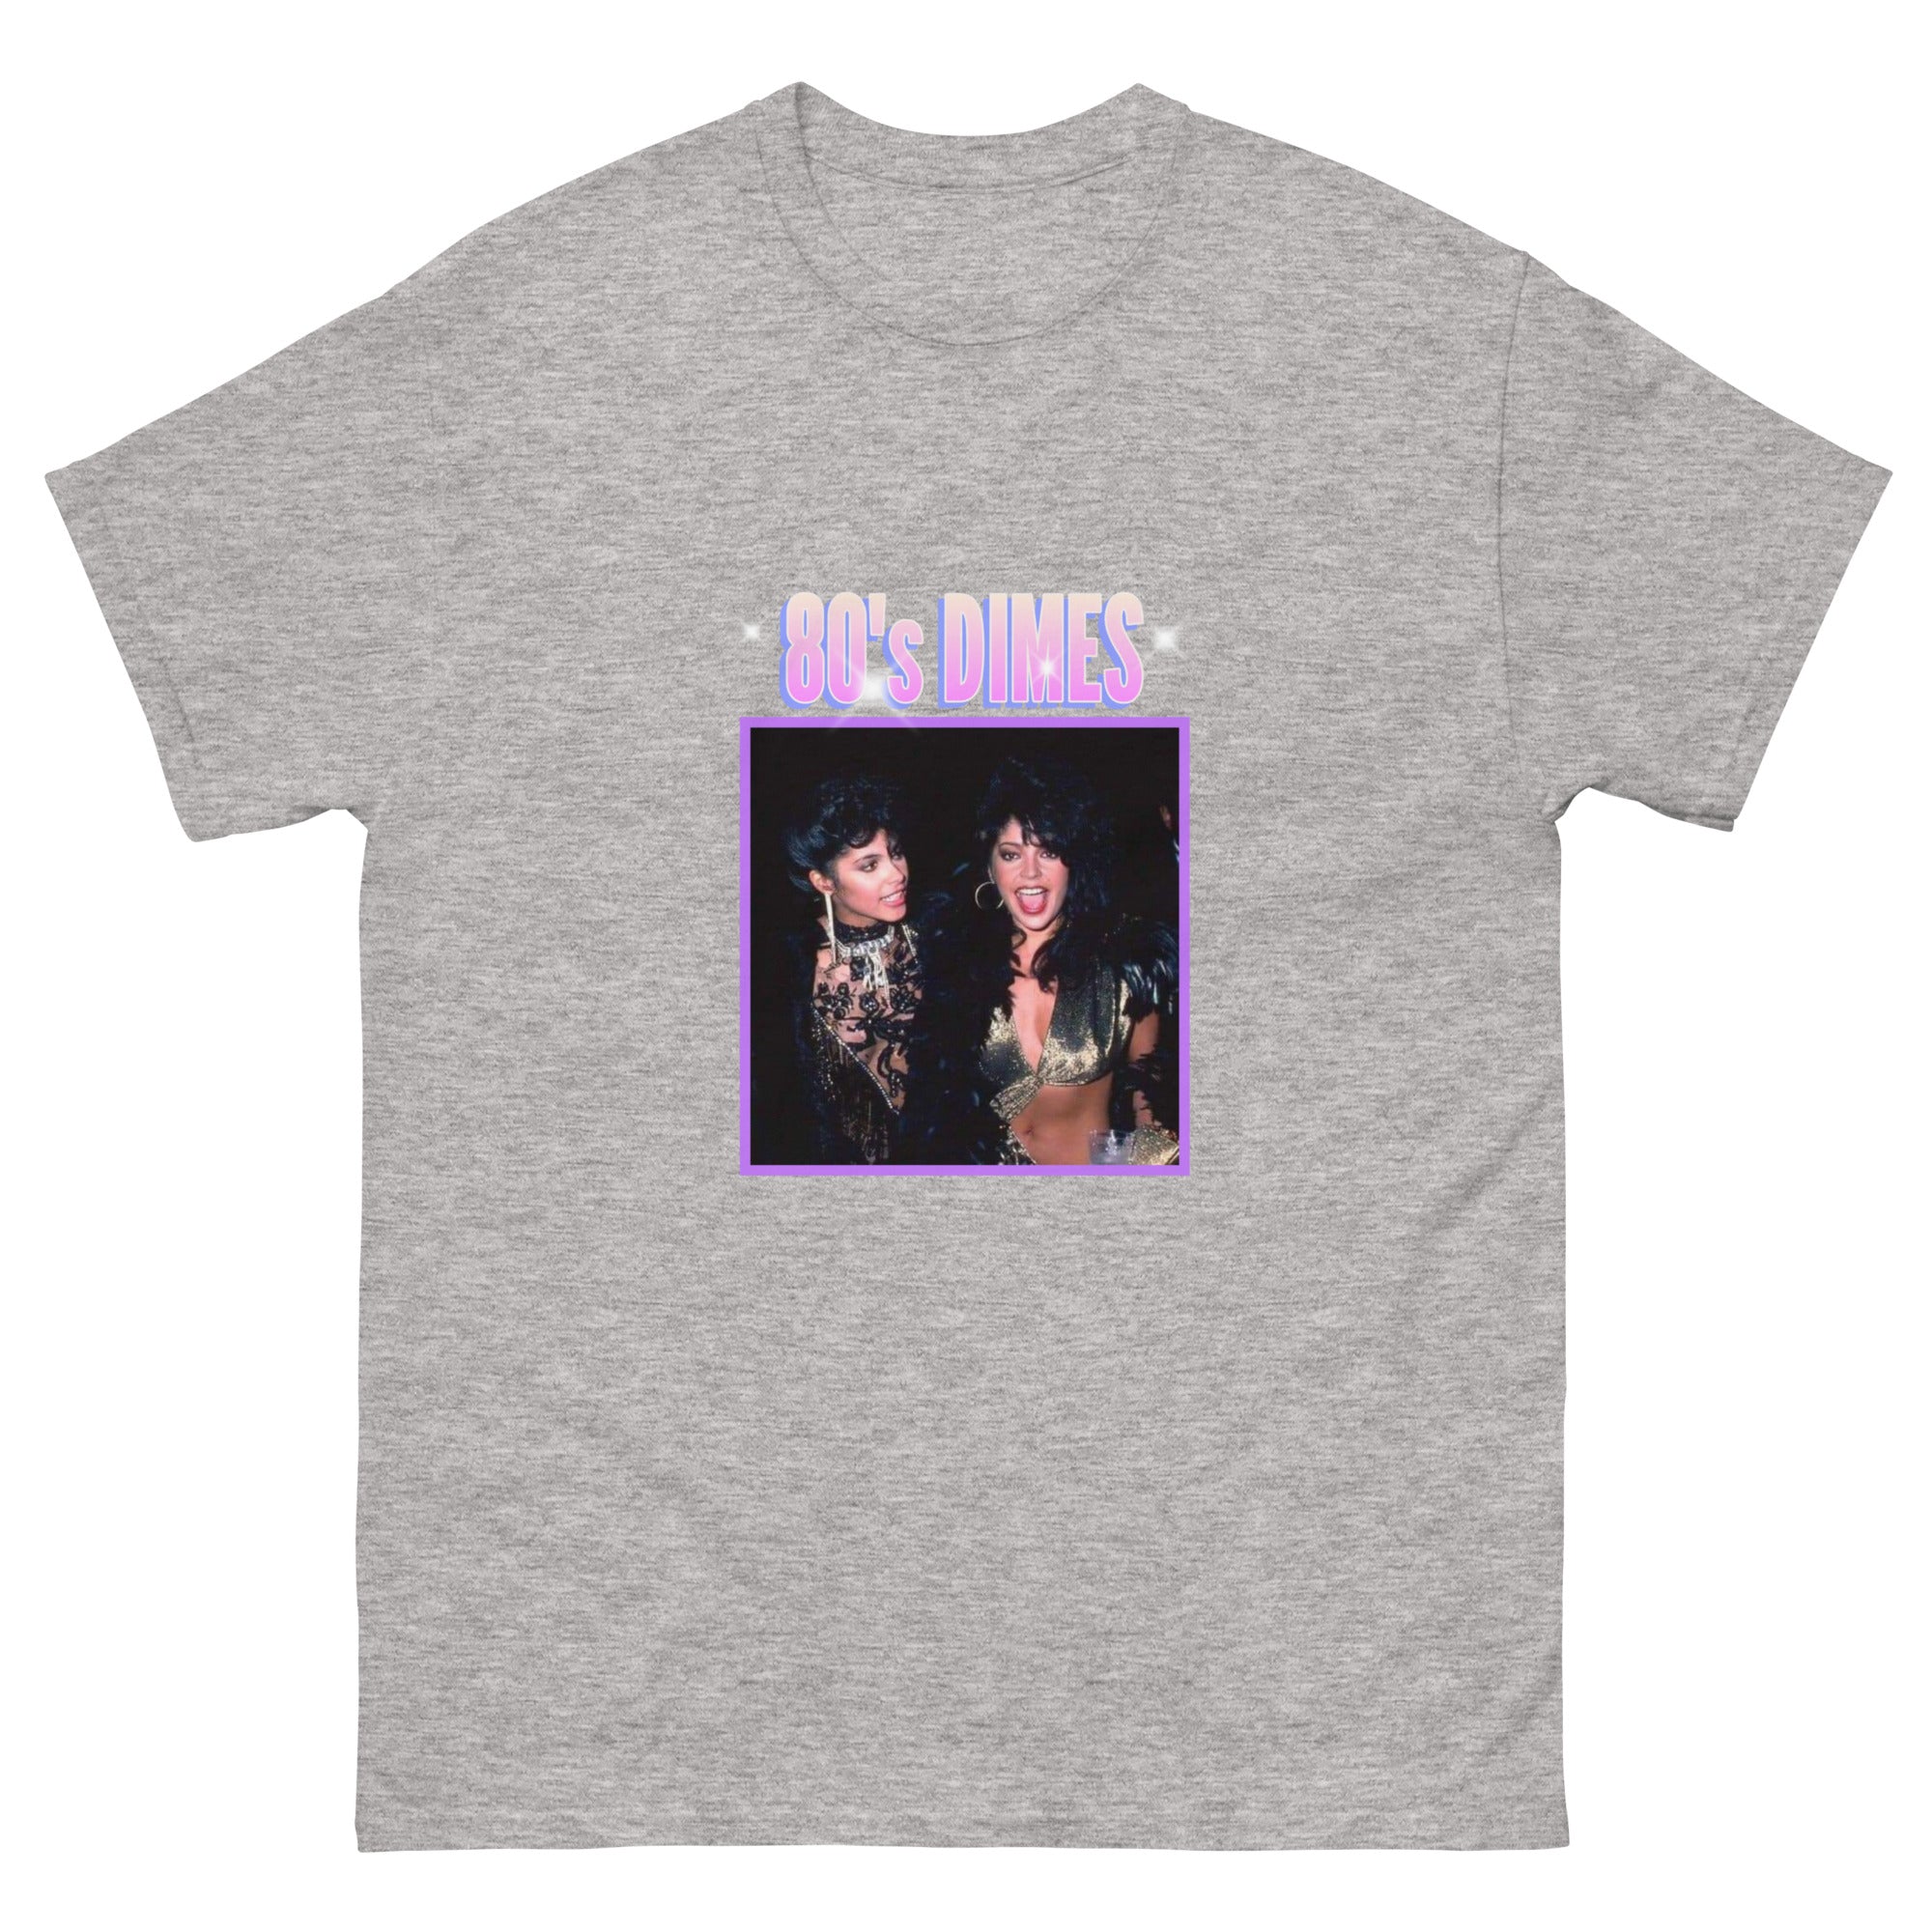 Men's (Unisex) 80's DImes T-Shirt